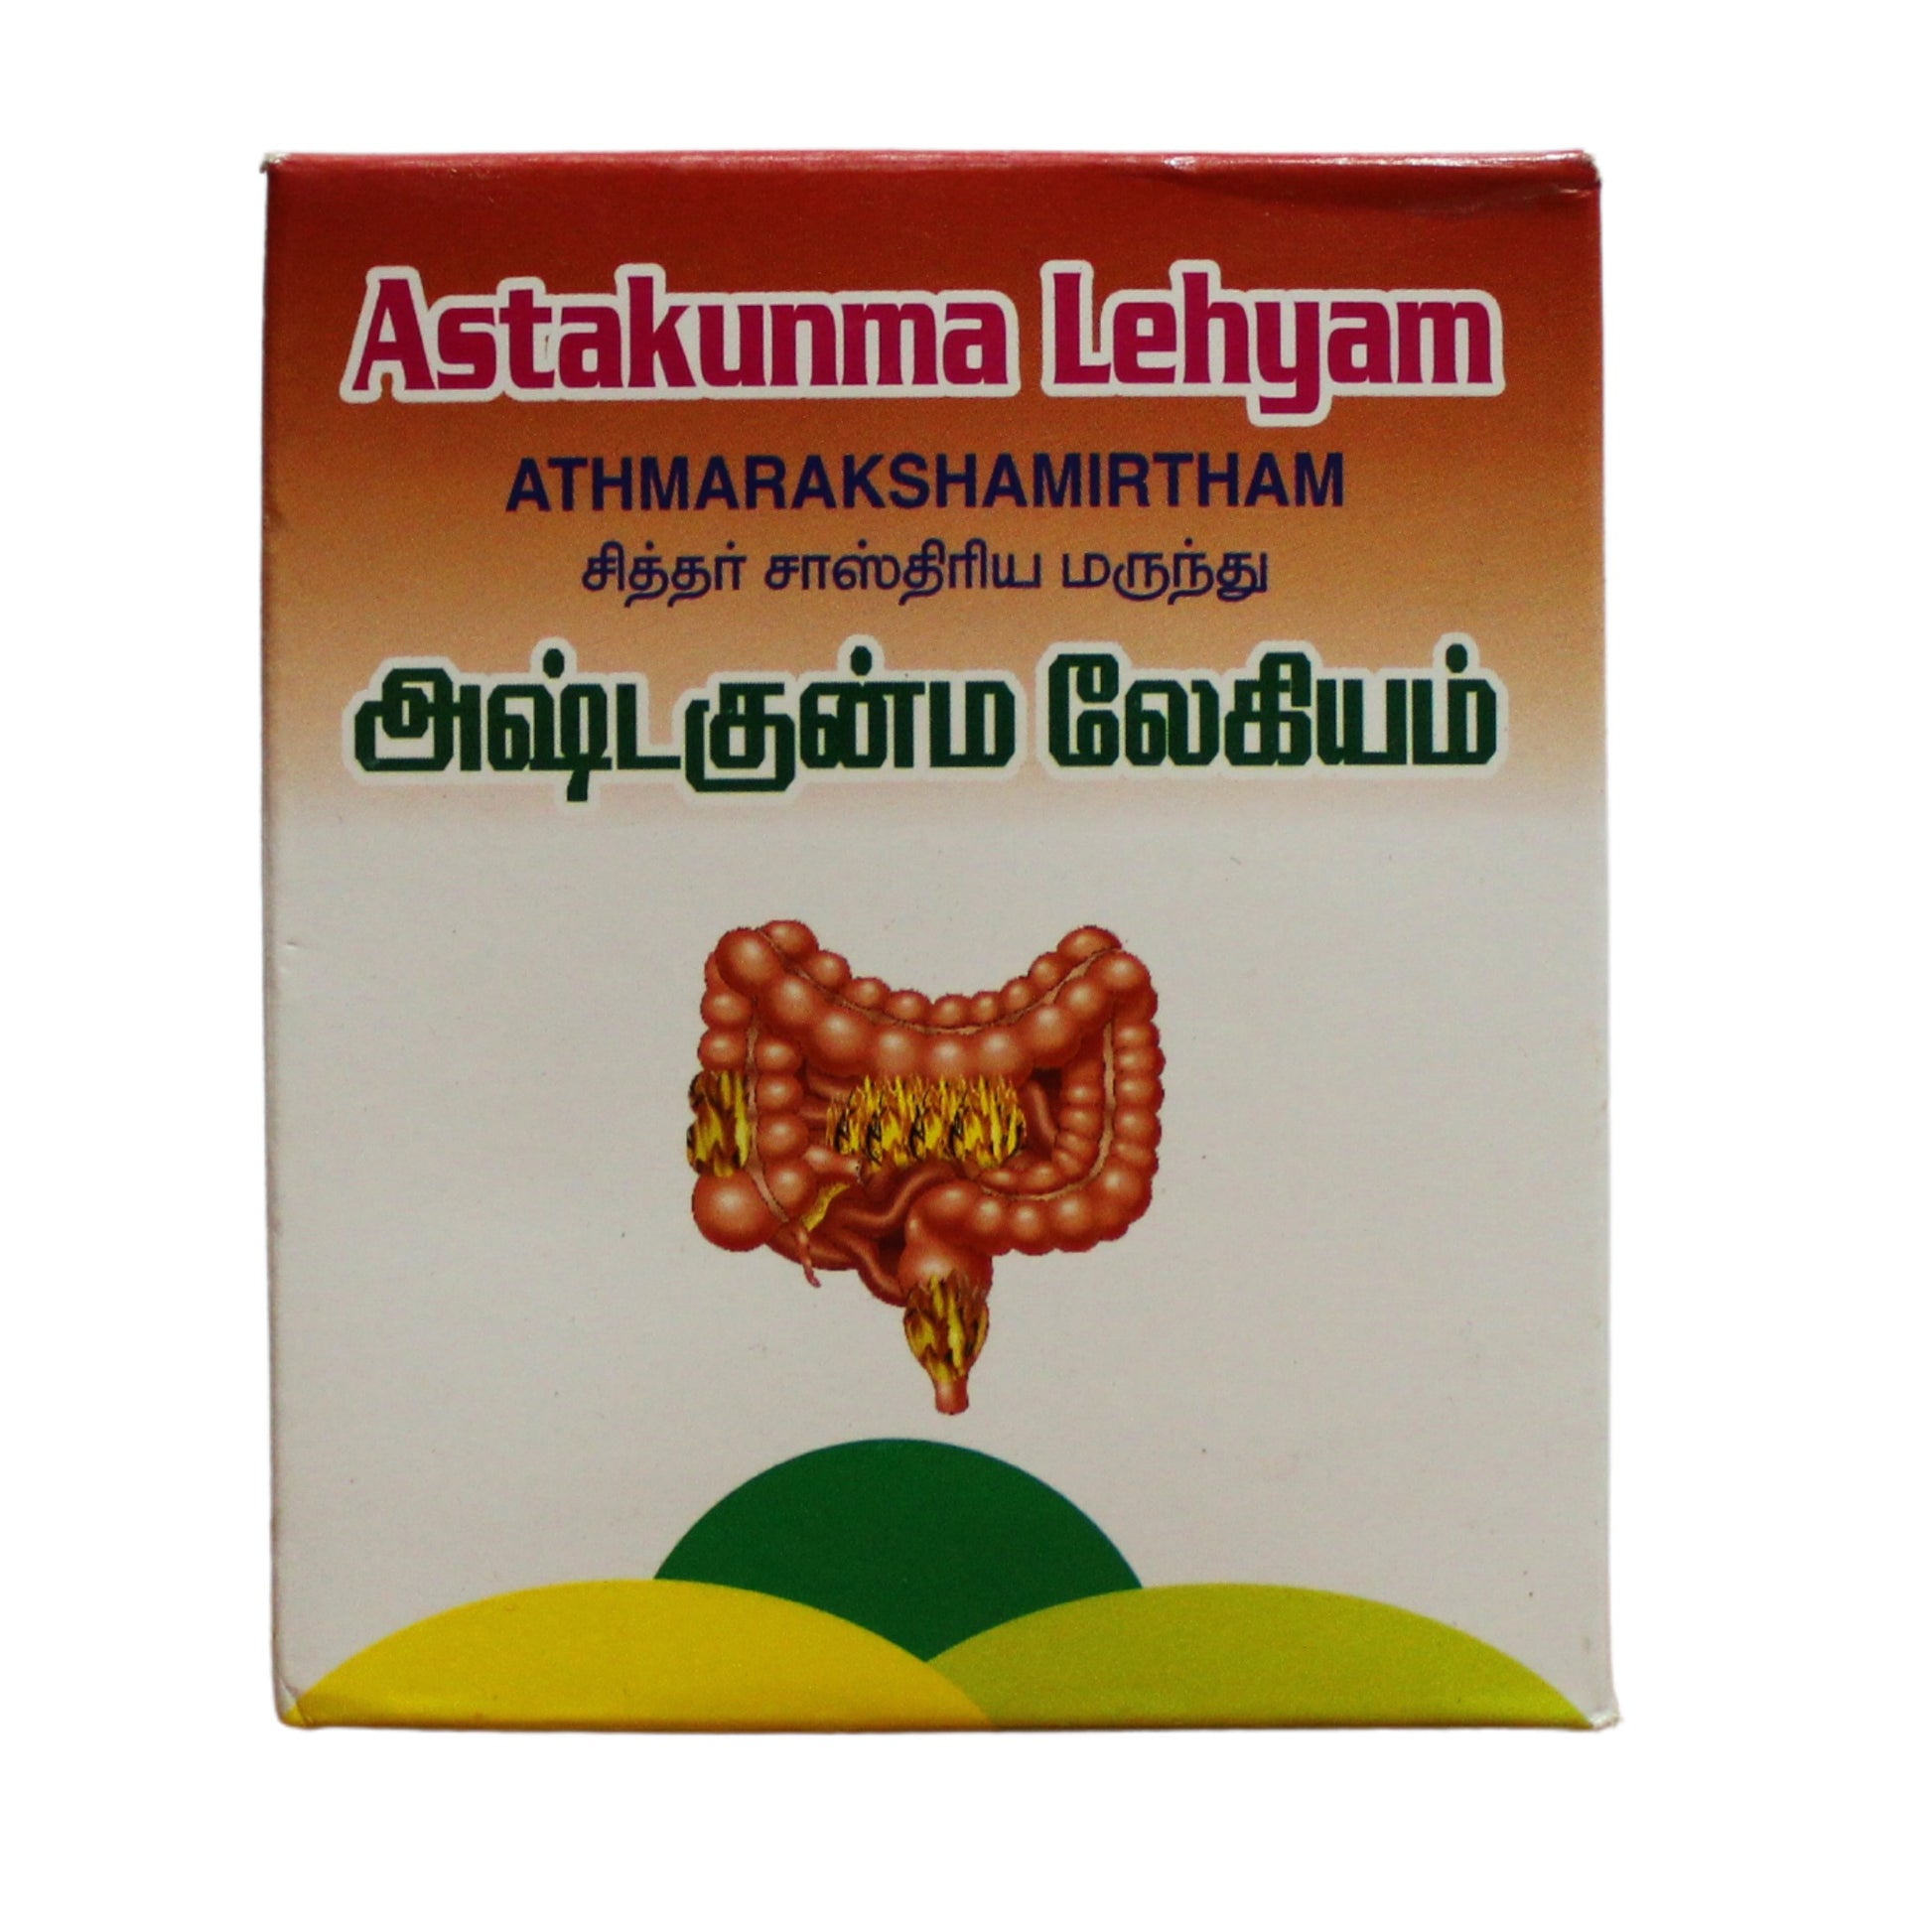 Ashtagunma lehyam 250gm Sathyas